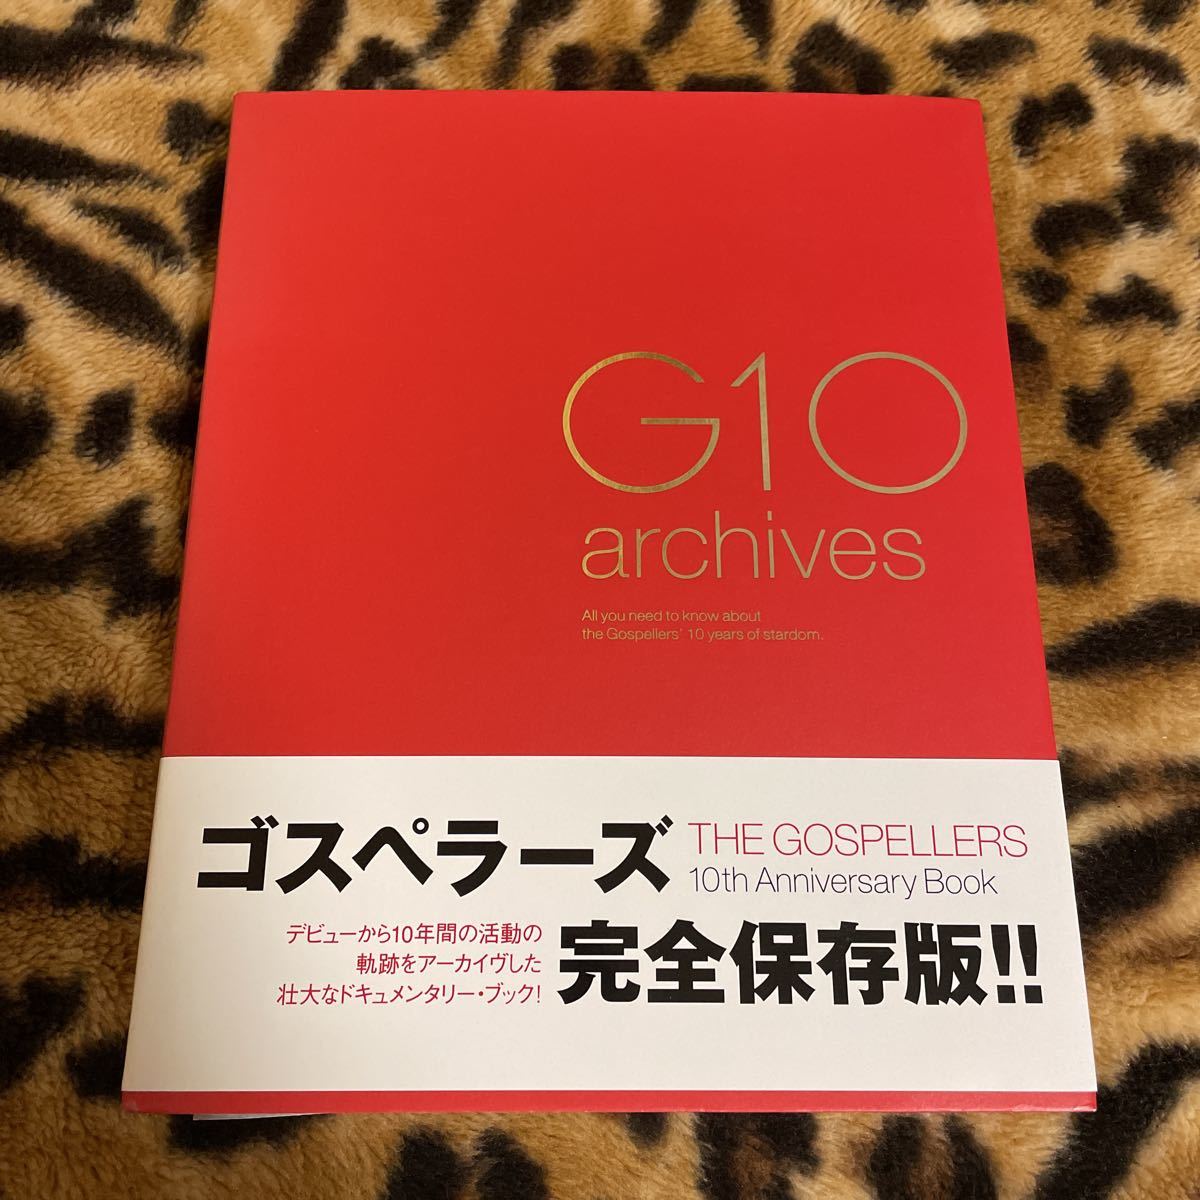 ゴスペラーズ G10 archives 大量出品中！　同梱発送歓迎です。_画像1